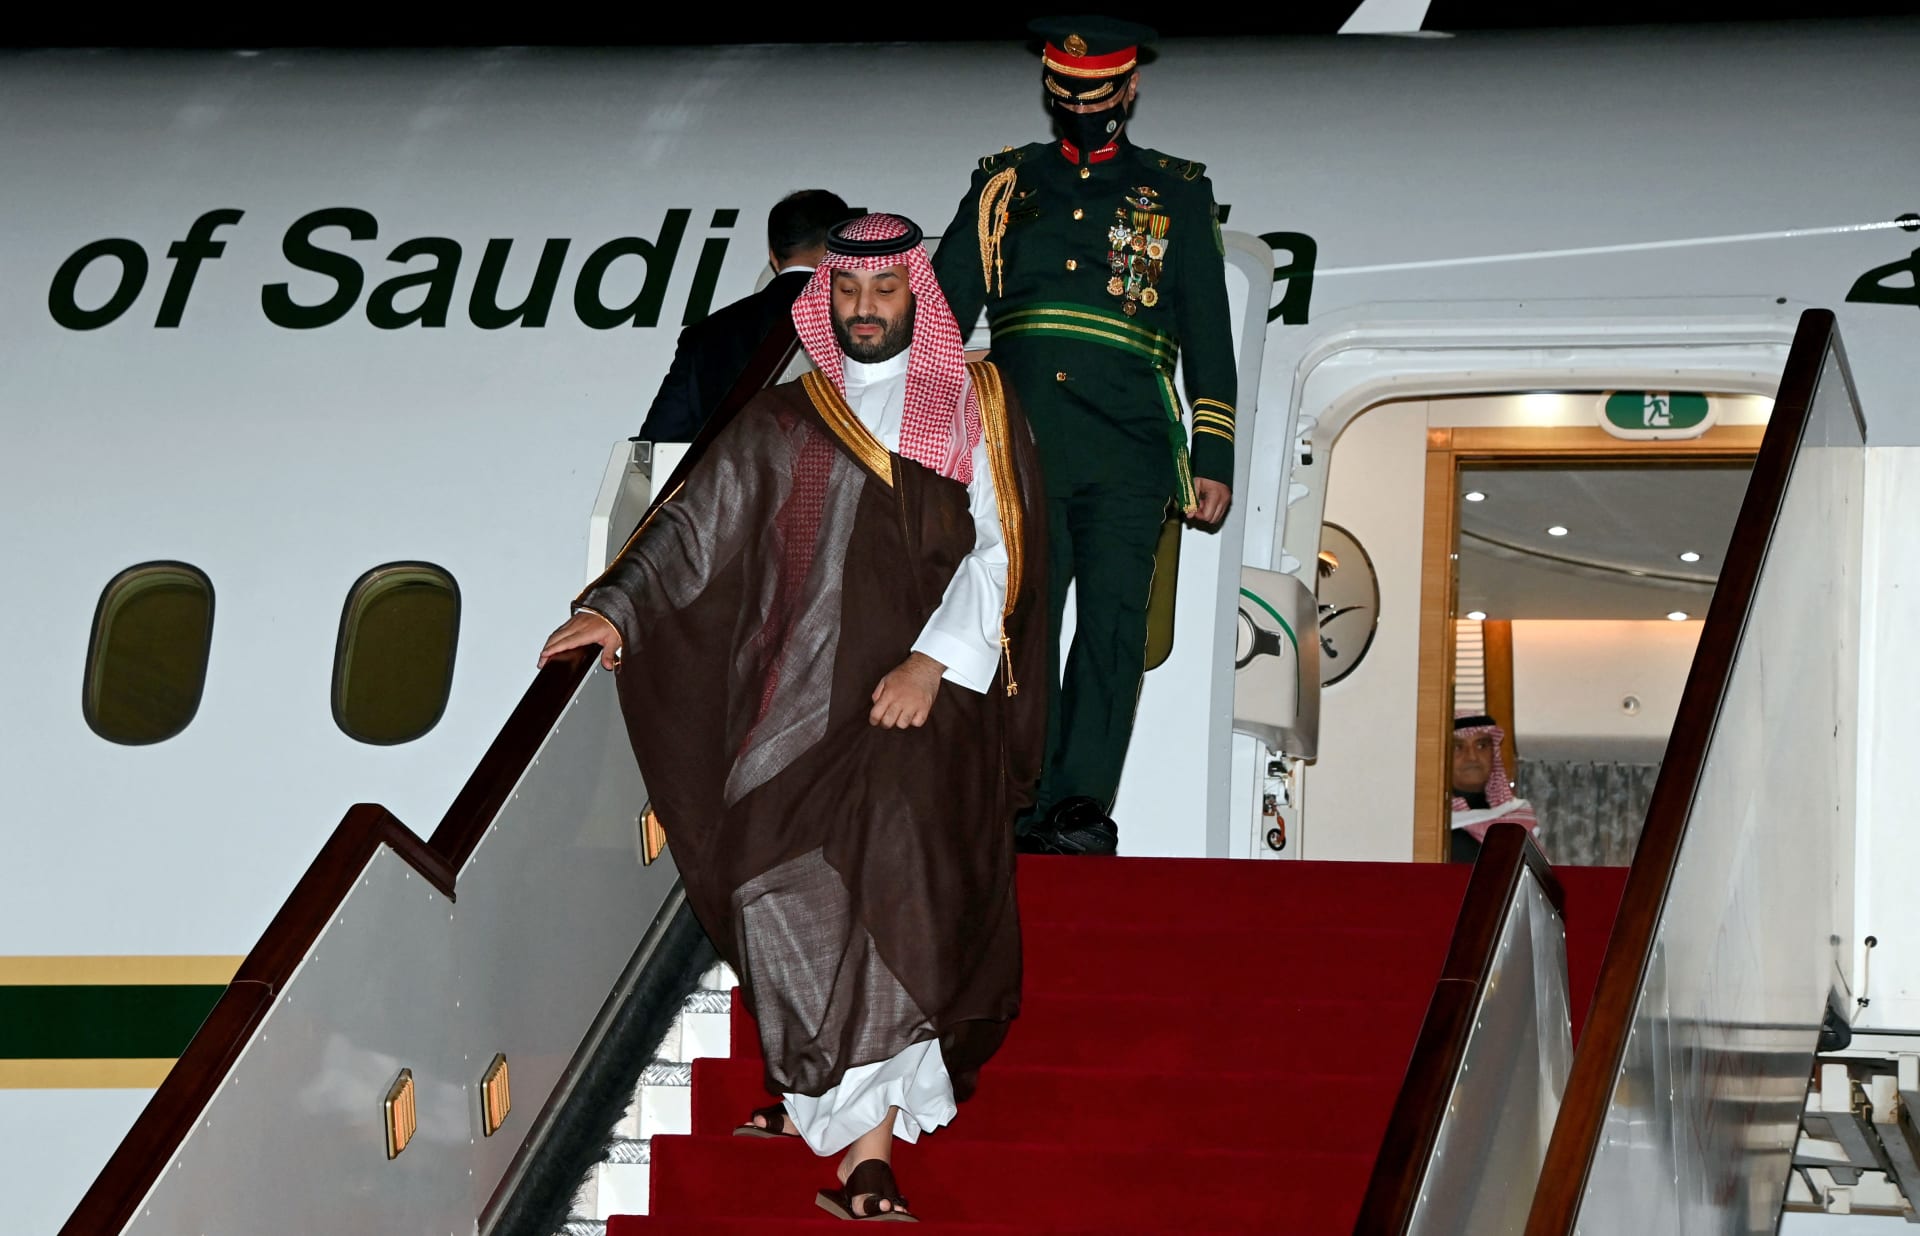 تفاعل على صورة محمد بن سلمان وأمراء سعوديين بسبب "تقديم الأكبر سنا" وتقاليد العائلة الملكية